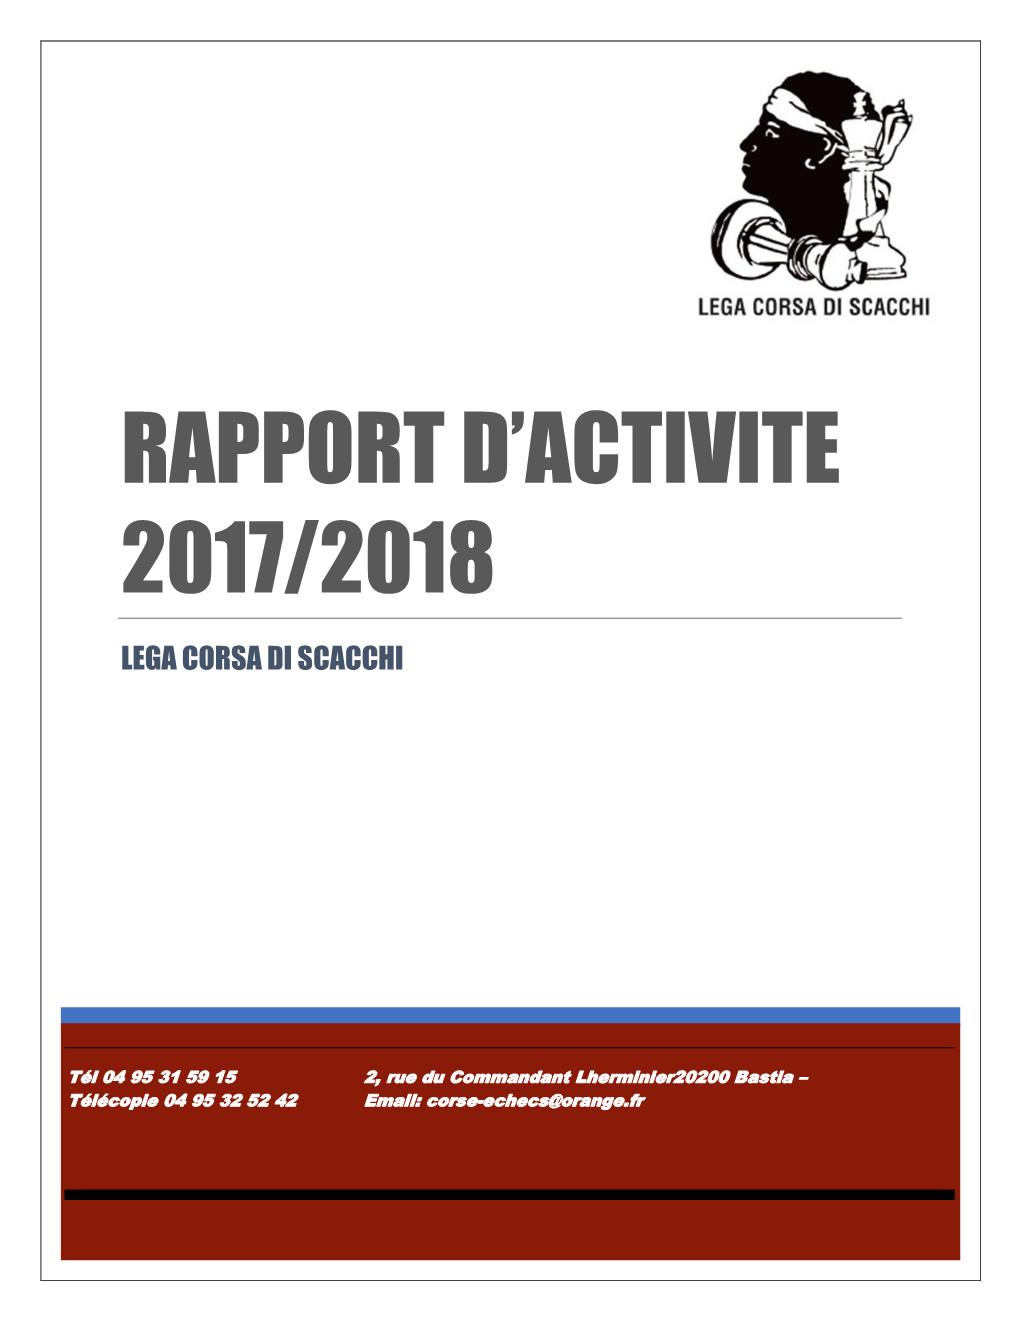 Rapport D'activite 2017/2018